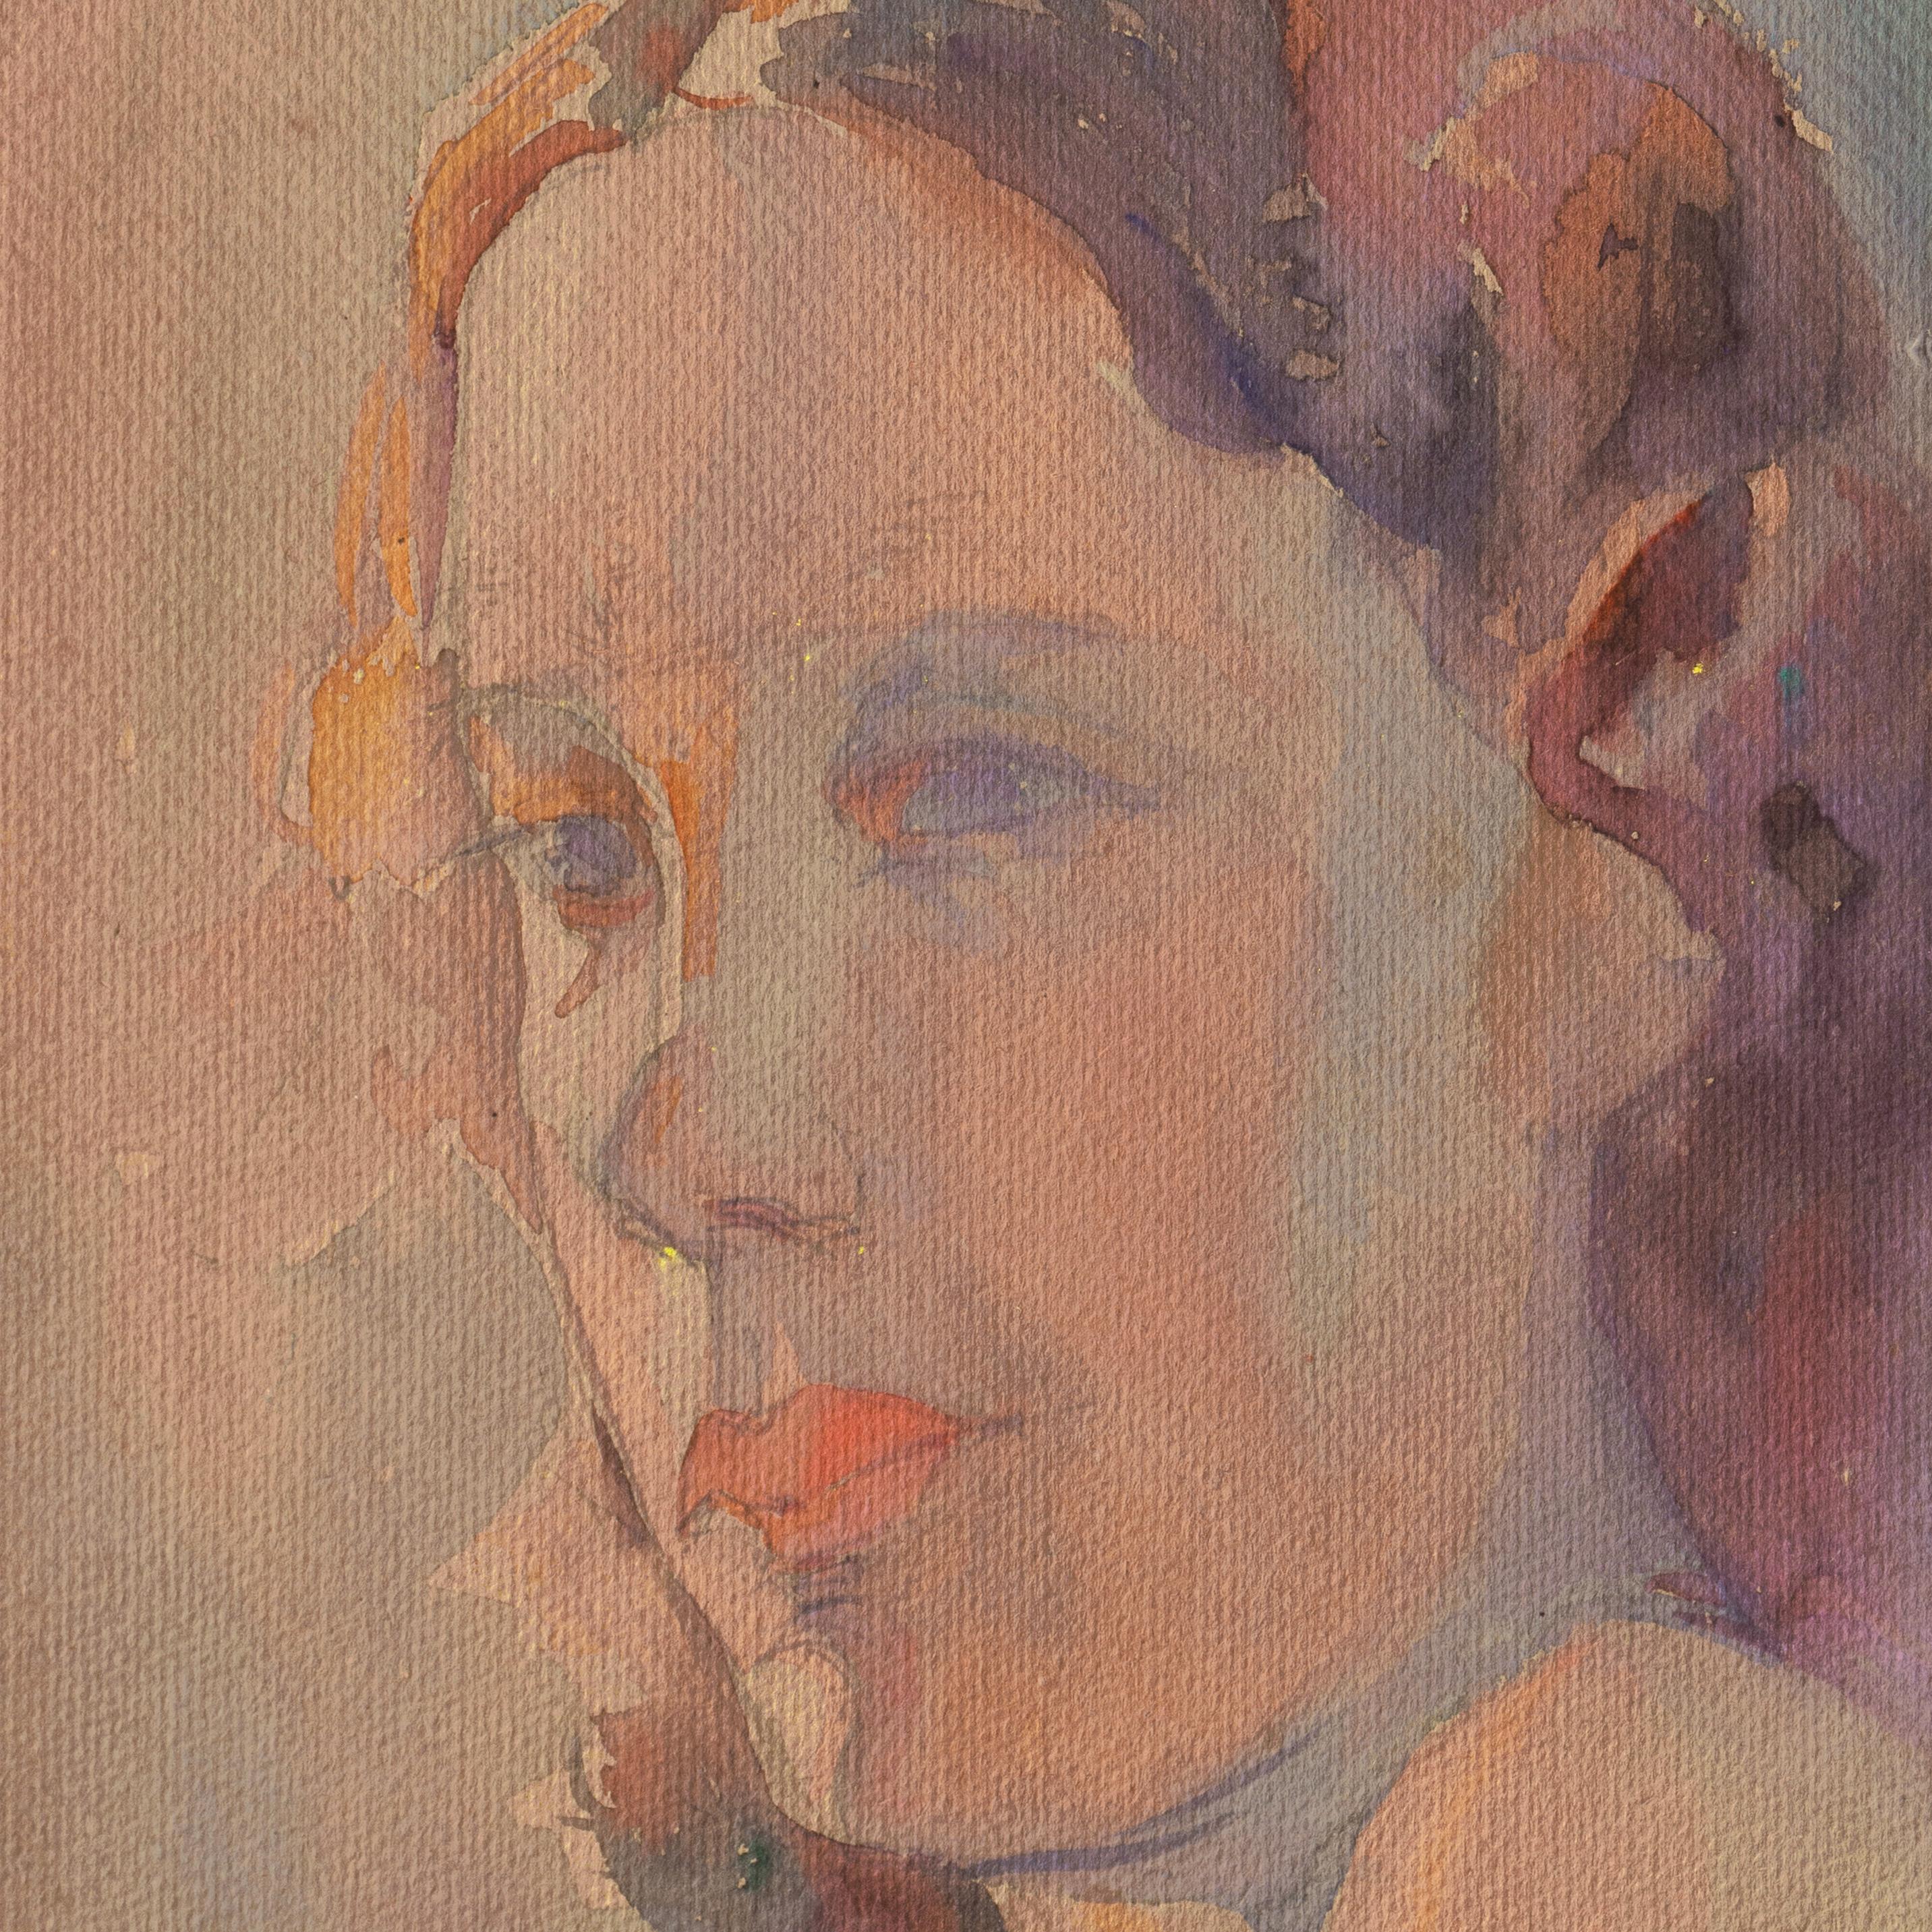 „Study of a Young Woman“, kalifornische Künstlerin, Art Institute of Chicago (Impressionismus), Painting, von Sarah Hobson